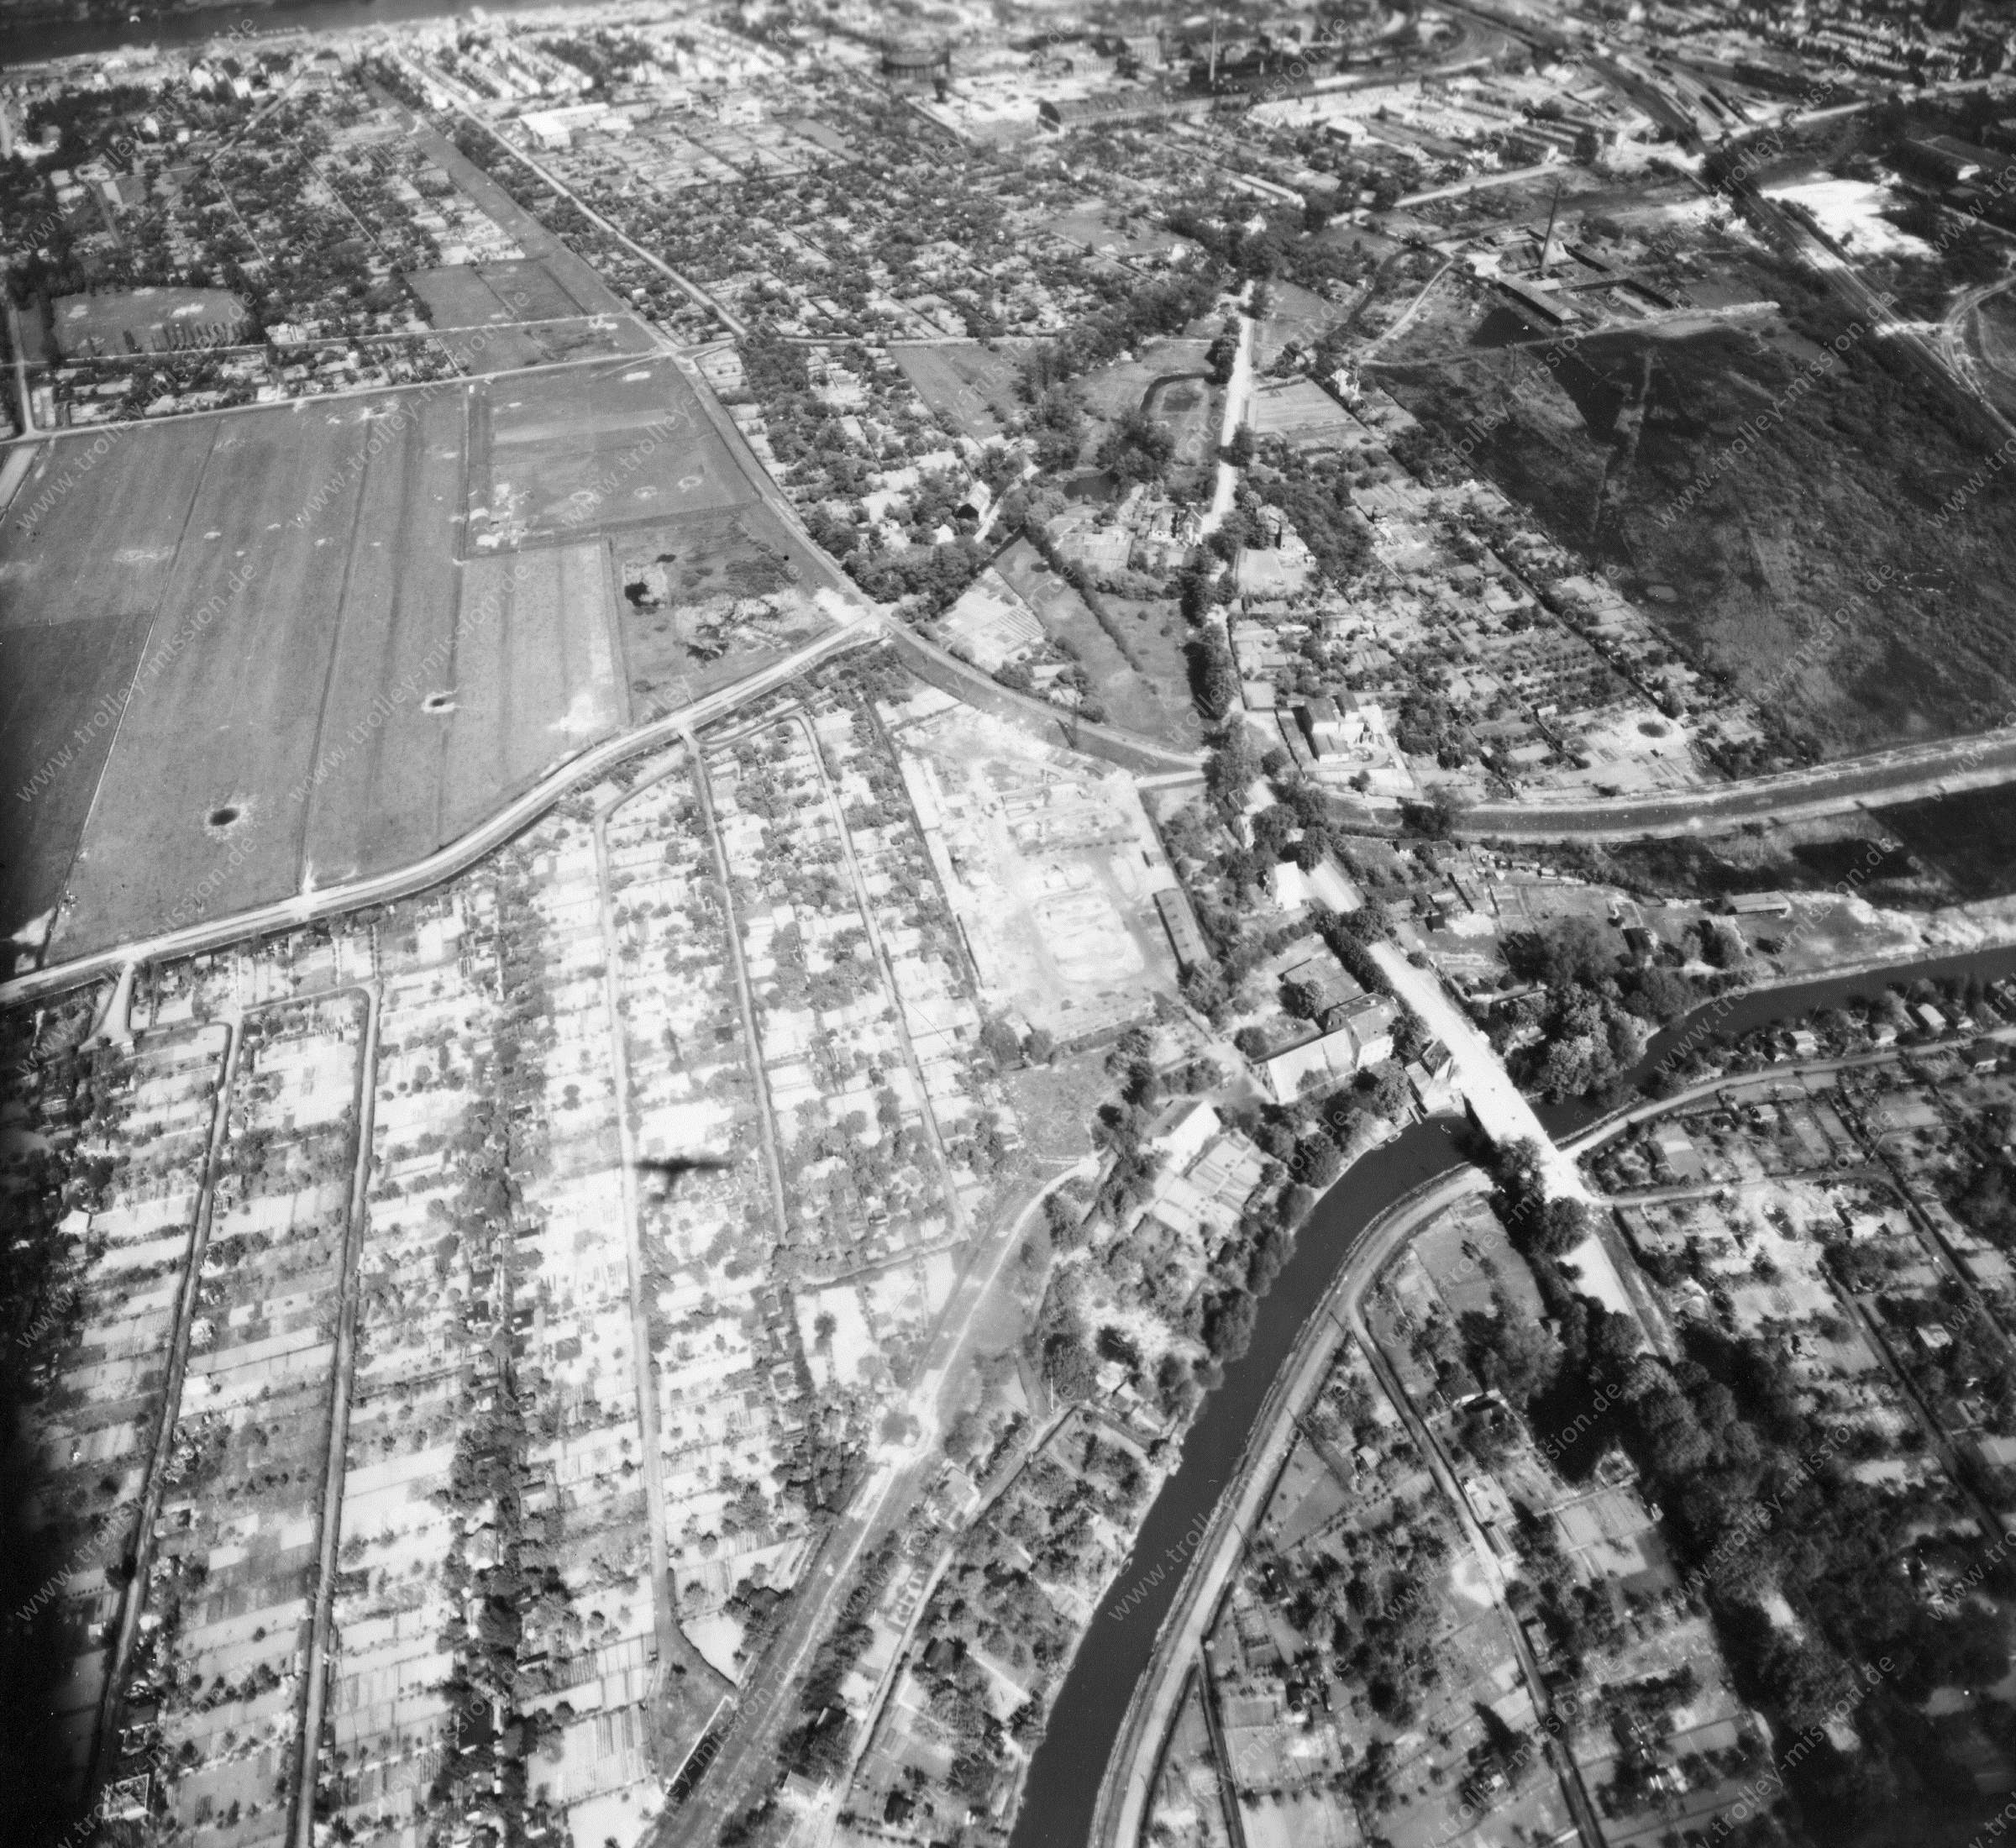 Luftbild Bremen 1945 – Wardamm und Grollander Ochtum sowie Warturmer Heerstraße und Ochtumbrücke